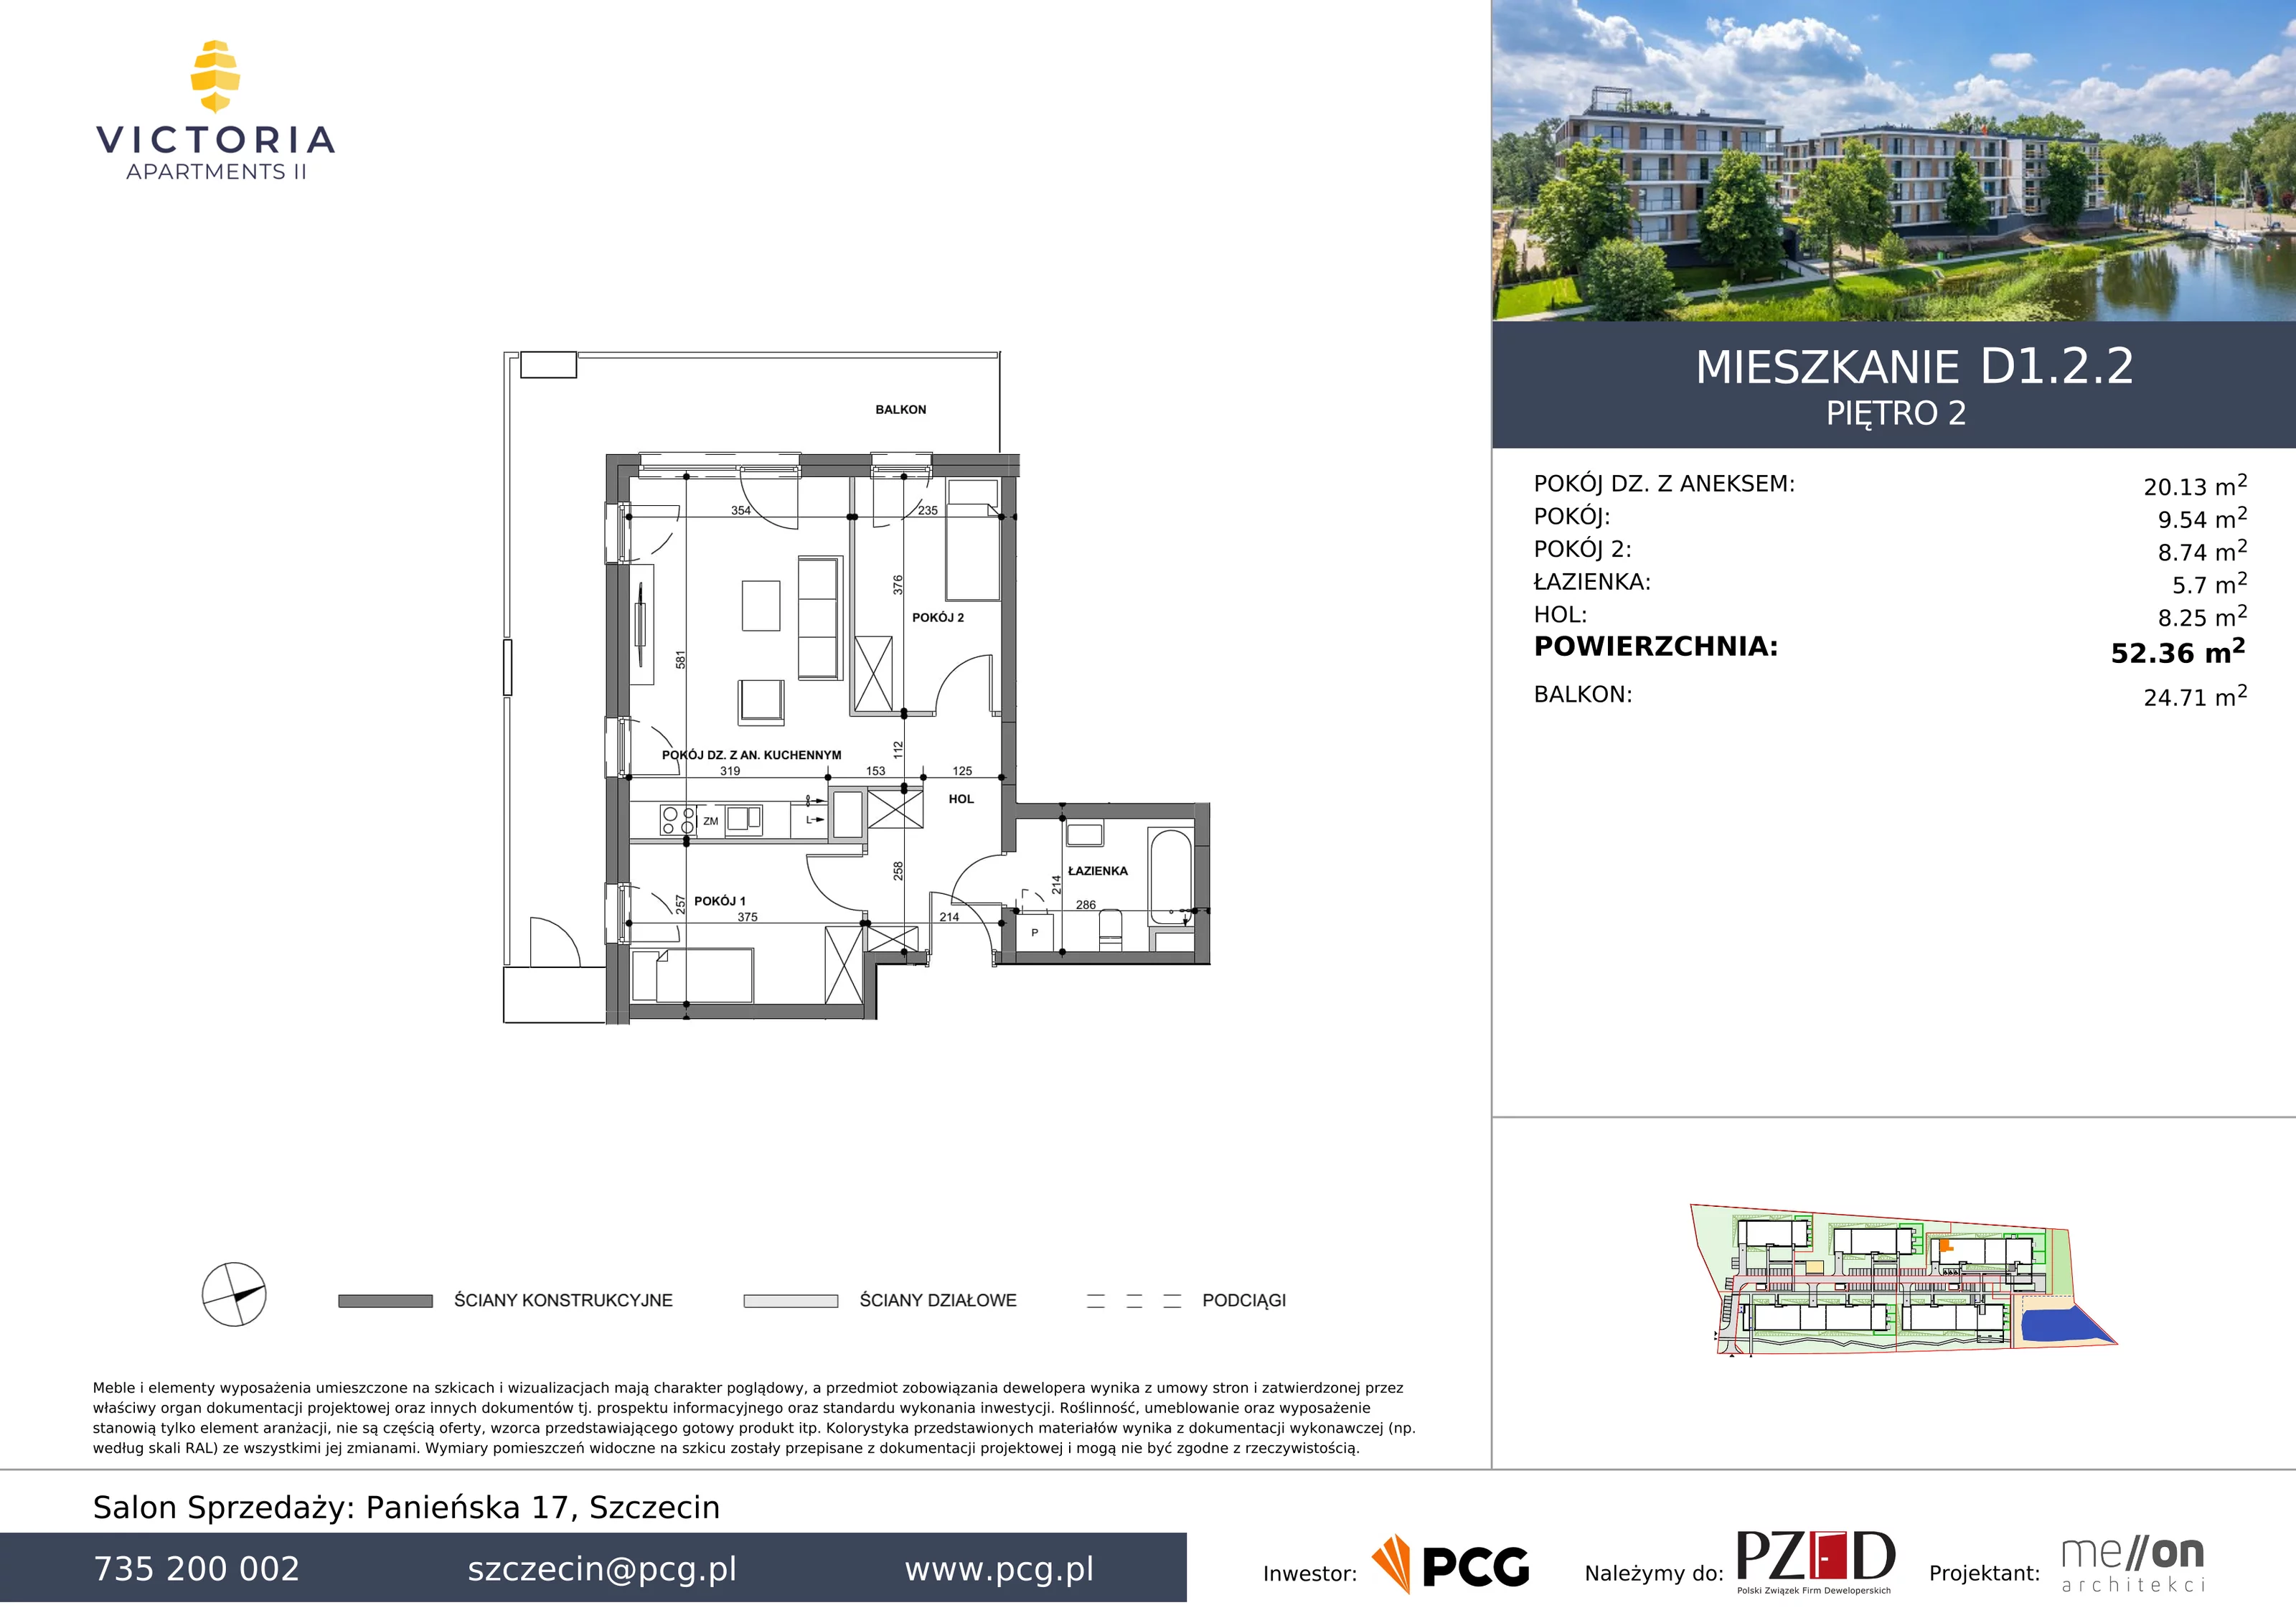 Apartament 52,36 m², piętro 2, oferta nr D1.2.2, Victoria Apartments II, Szczecin, Prawobrzeże, Dąbie, ul. Przestrzenna